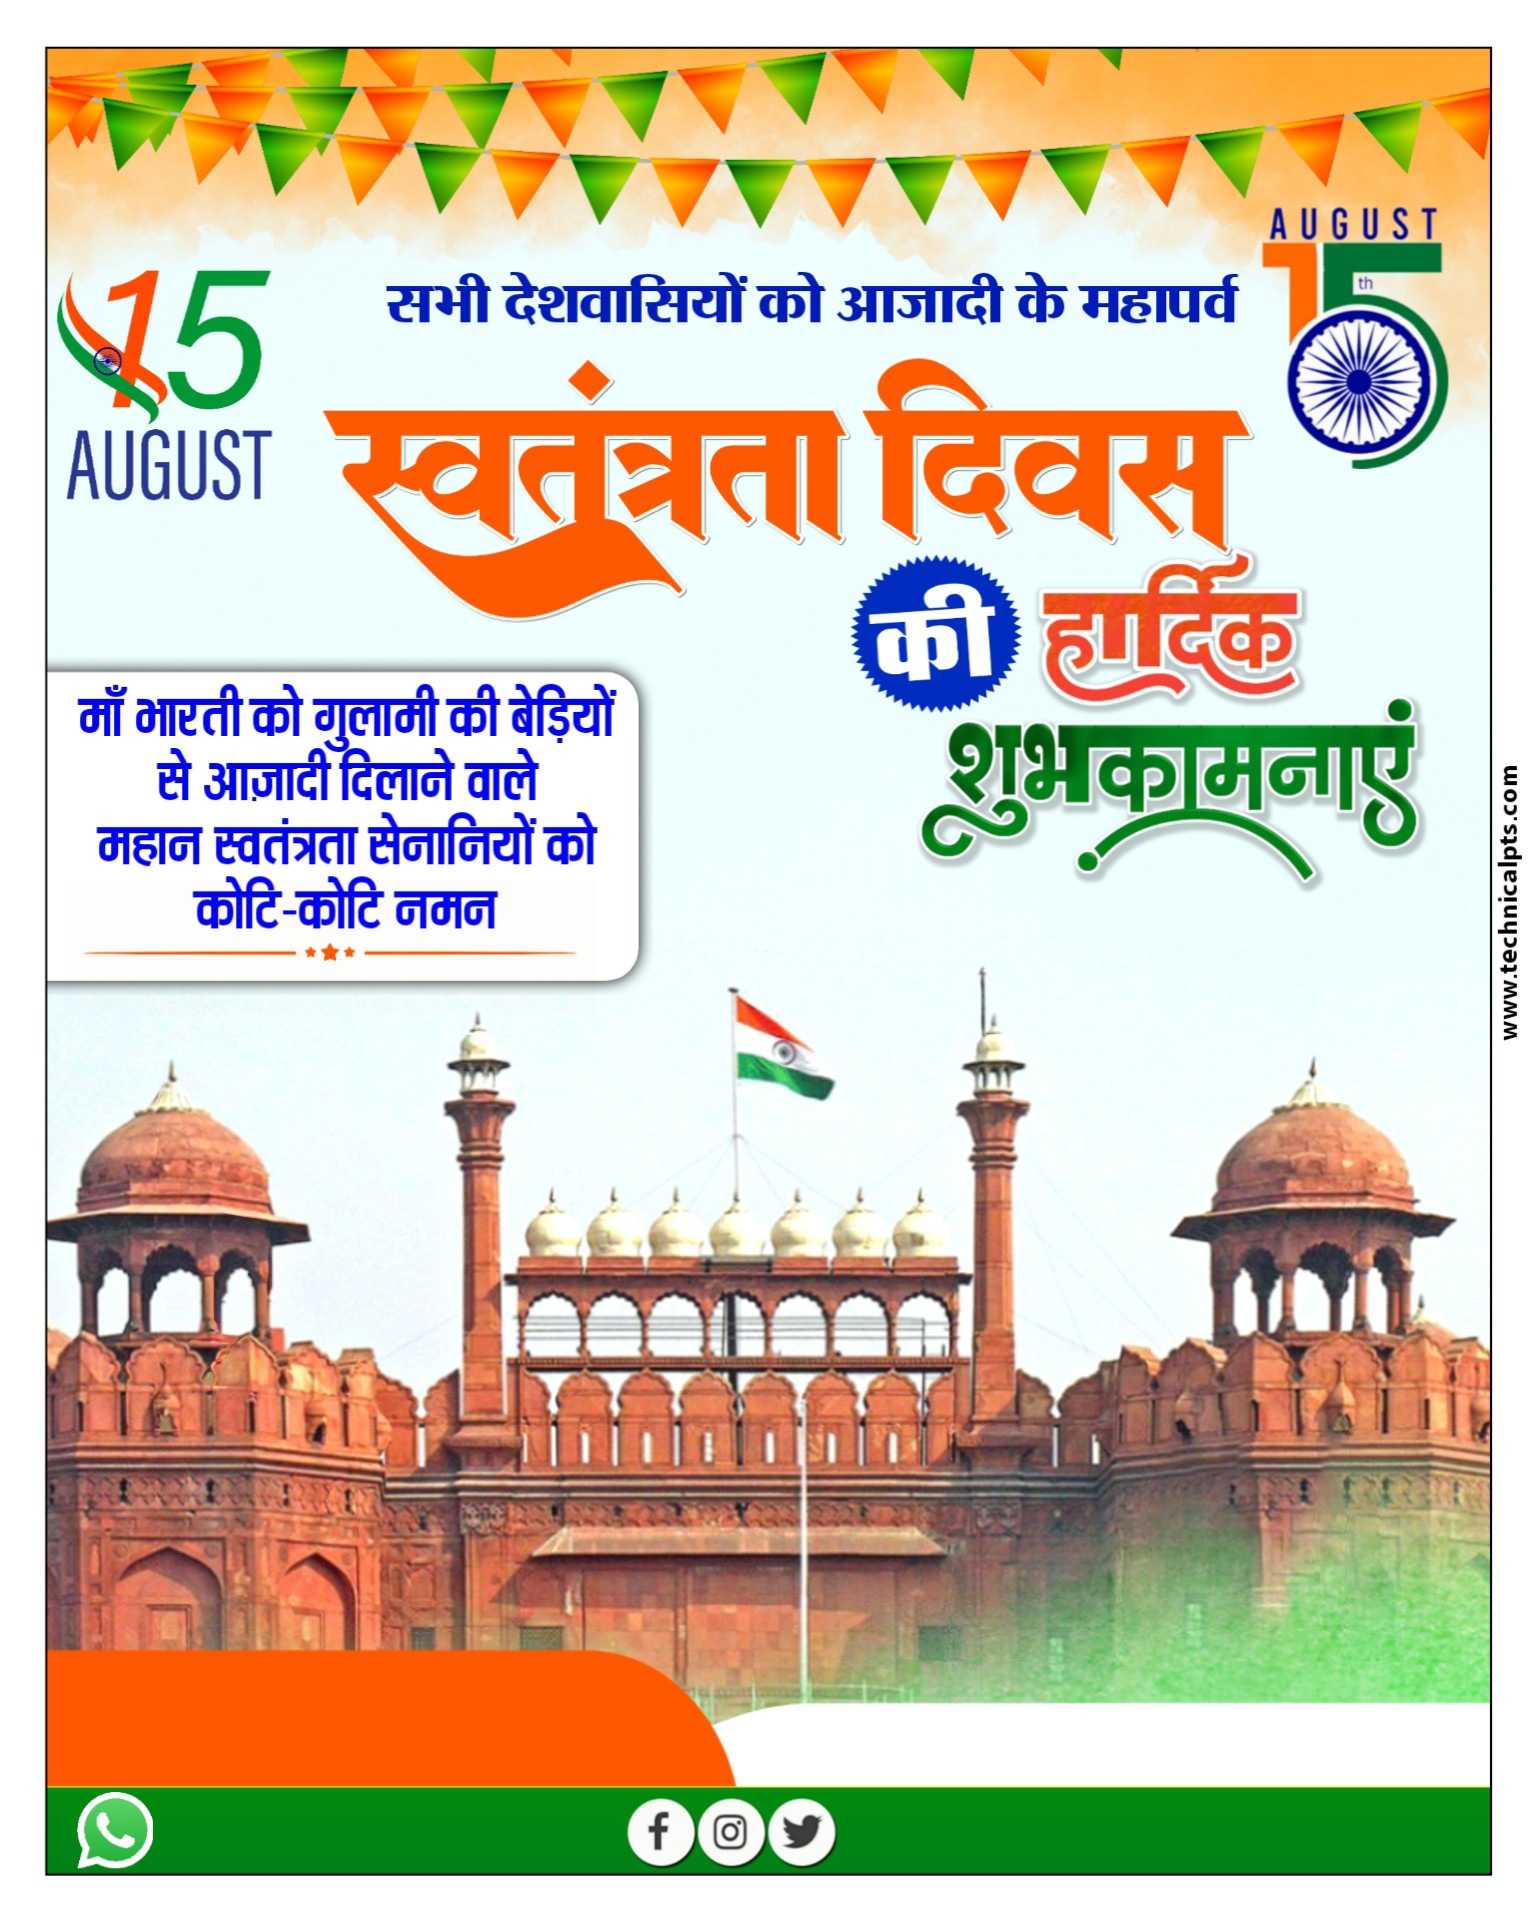 15 August स्वतंत्रता दिवस का पोस्टर कैसे बनाएं| 15 August poster plp file download | 15 August poster Kaise banaen mobile se